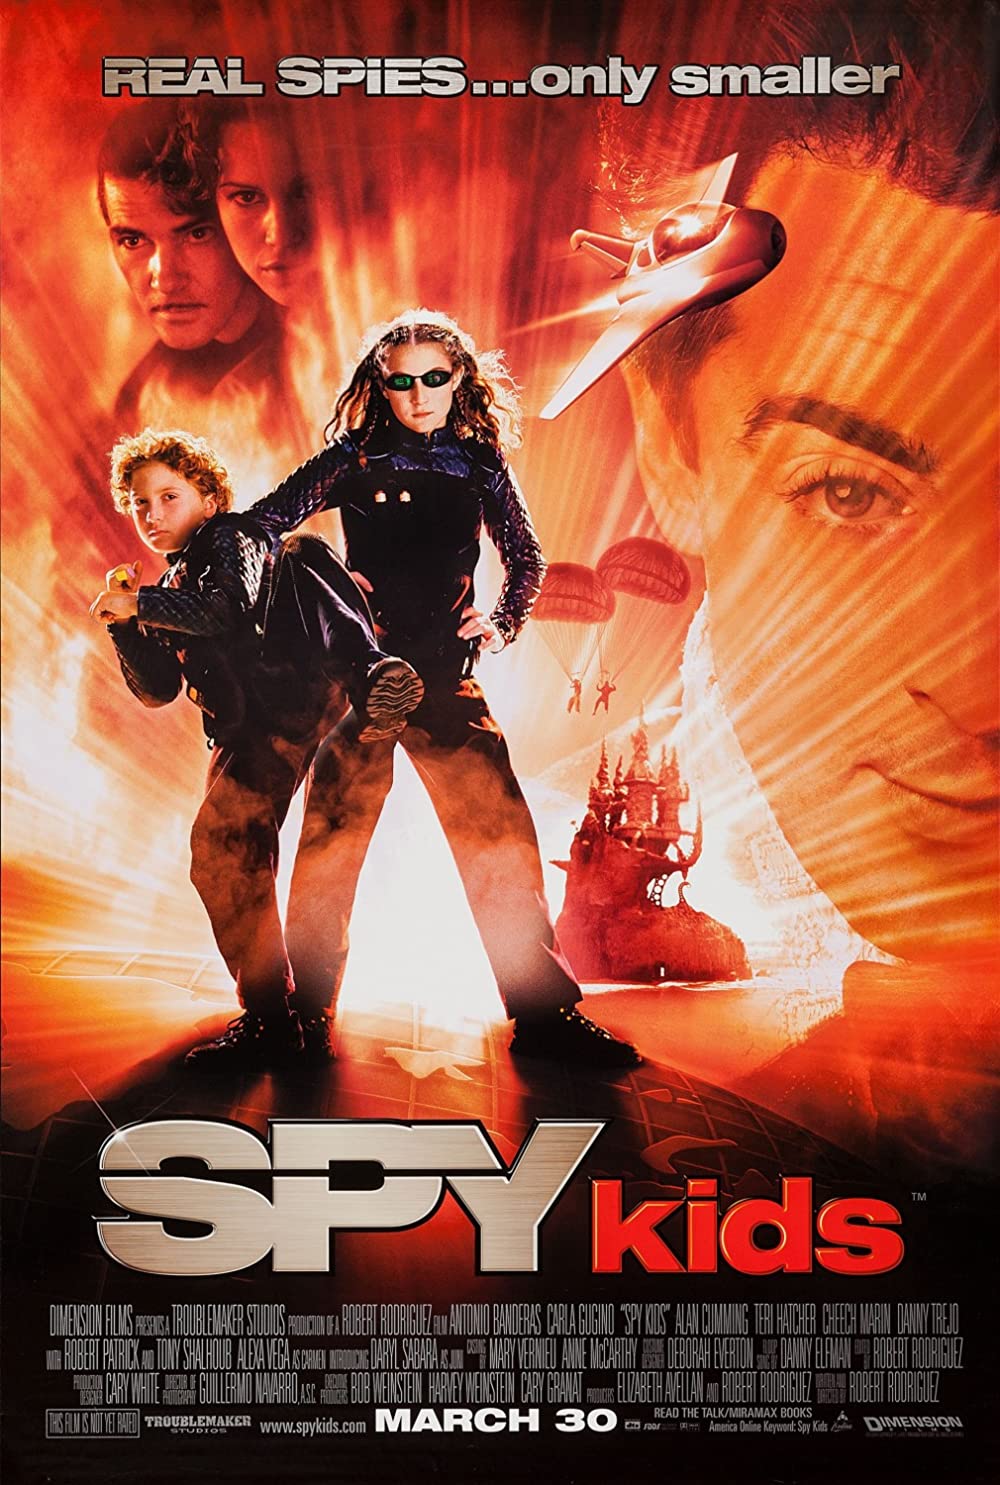 Filmbeschreibung zu Spy Kids